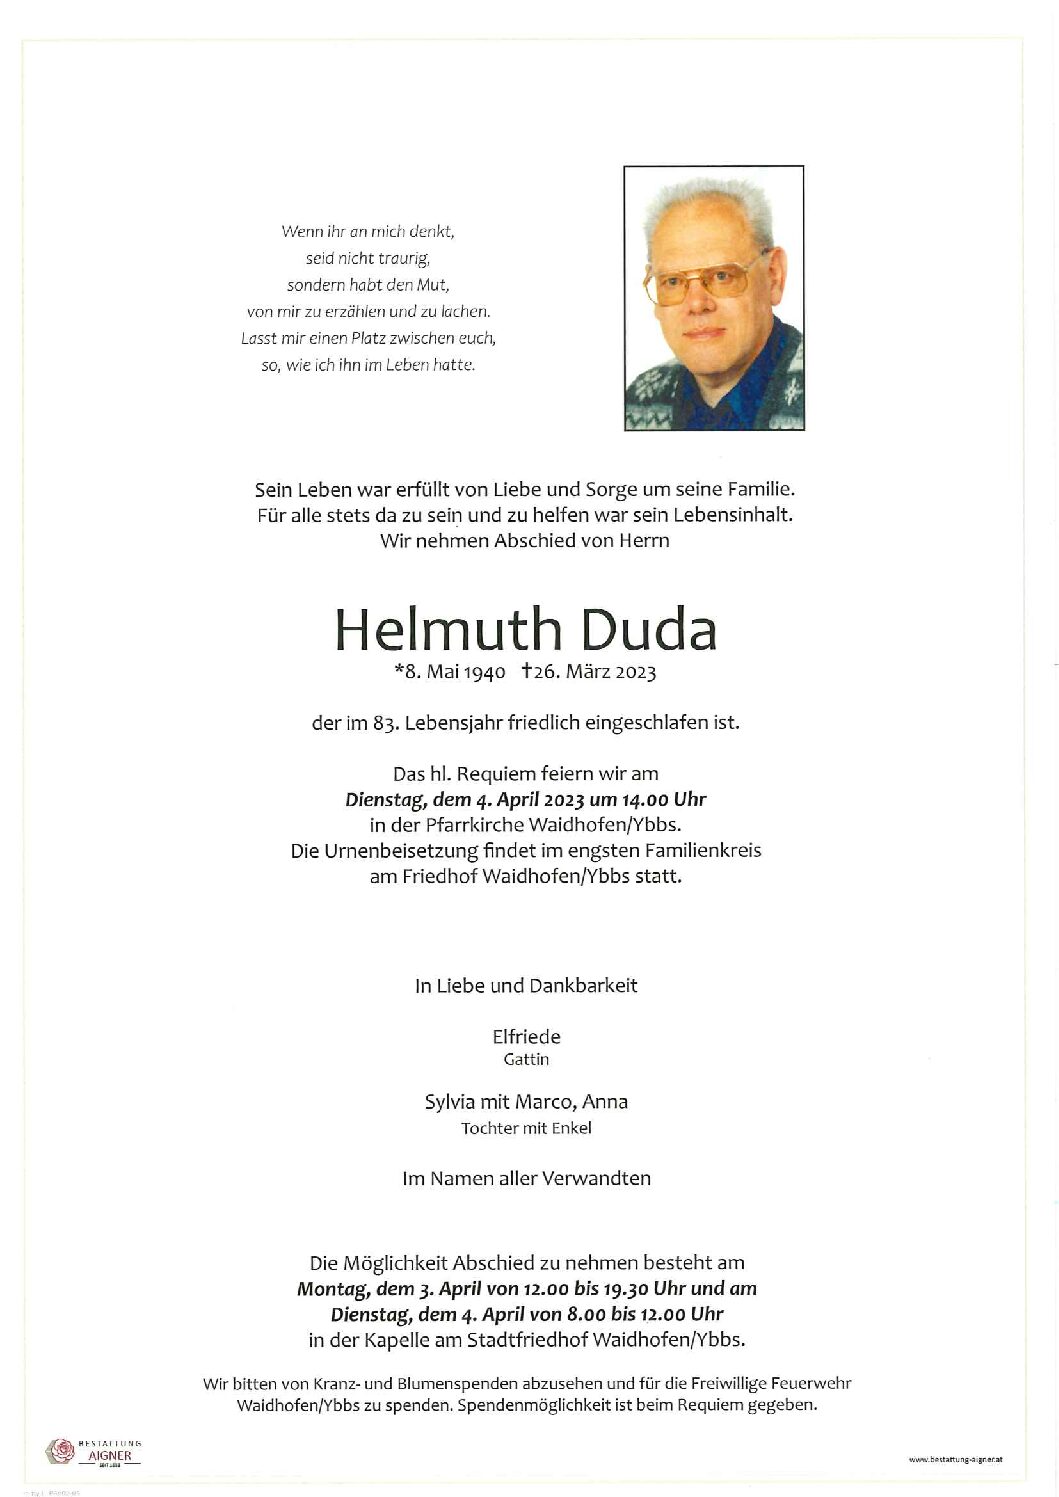 Helmuth Duda